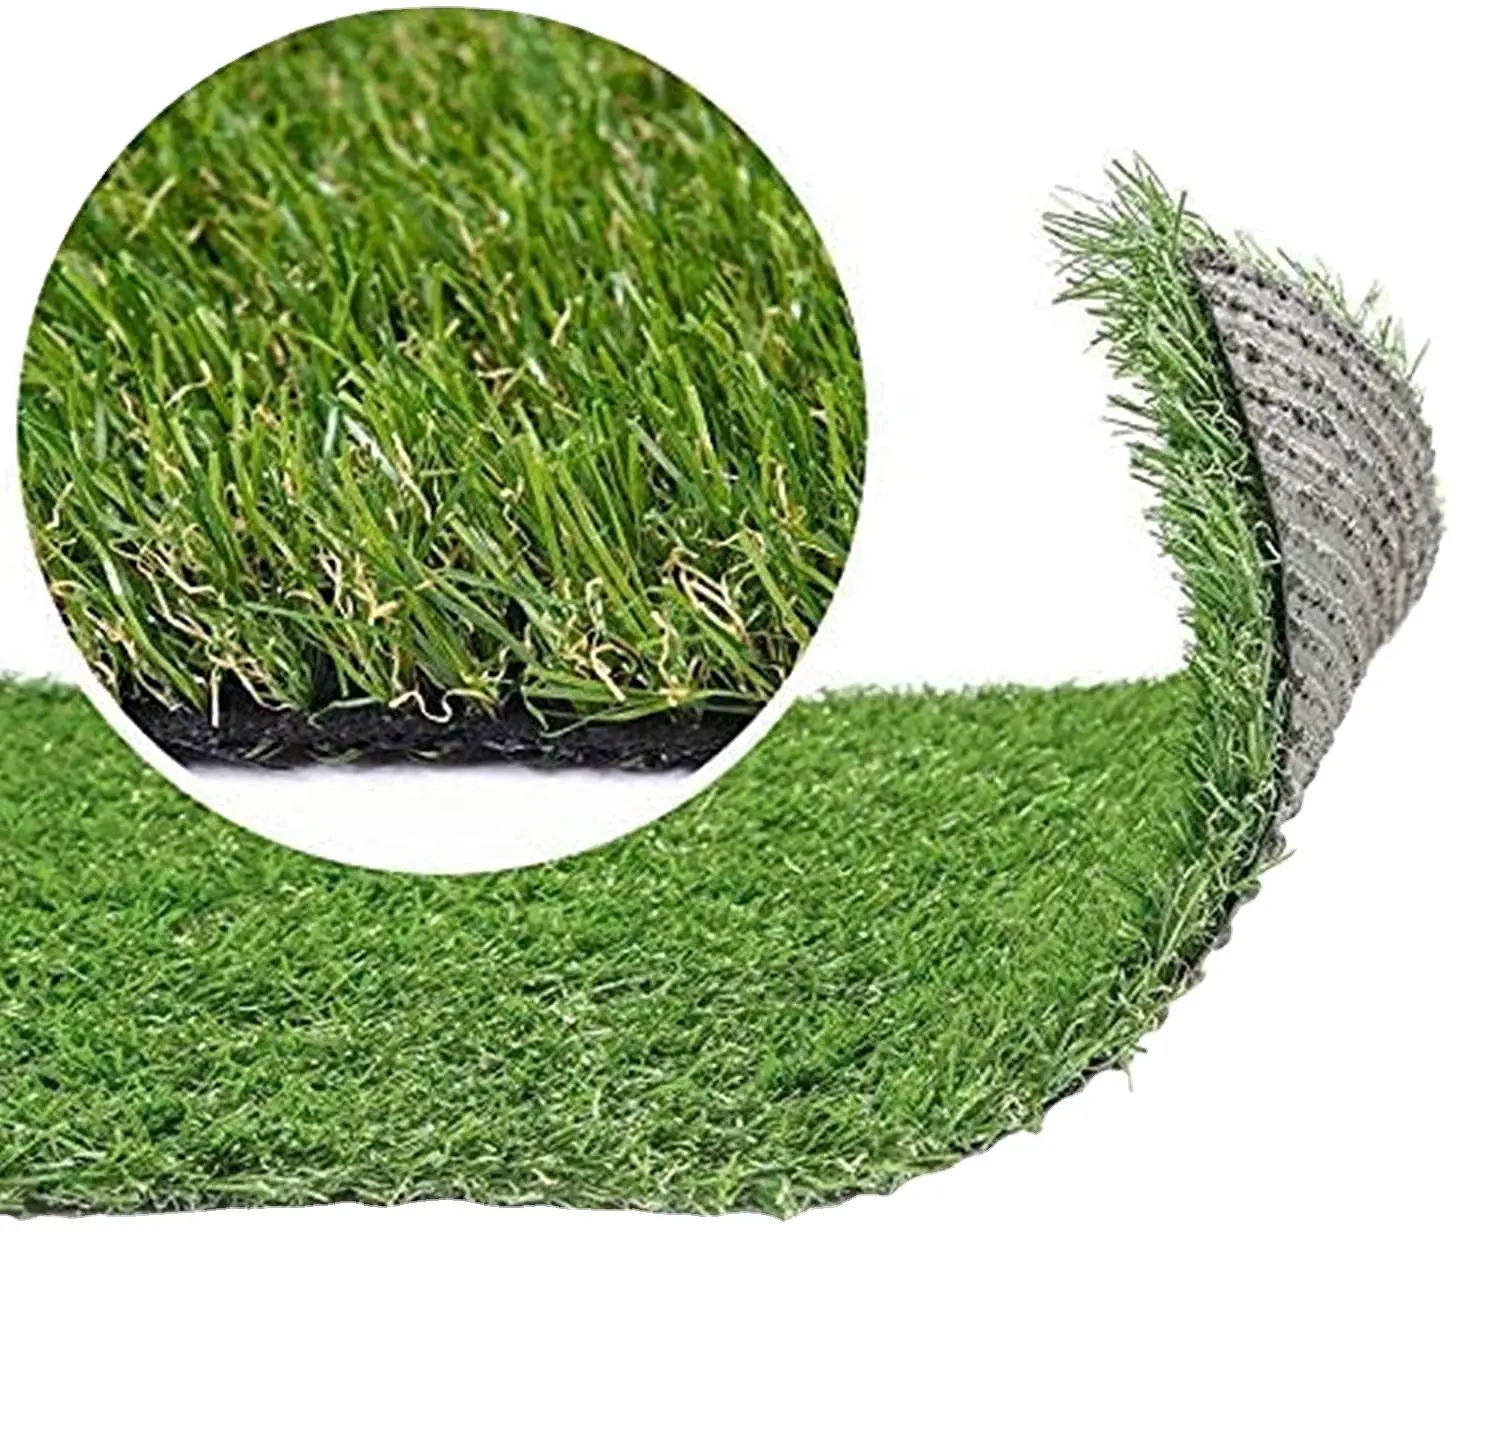 Thể thao ngoài trời Turf tự nhiên nhựa tổng hợp thảm cho bóng đá bóng đá sân golf chơi cỏ nhân tạo cảnh quan lĩnh vực